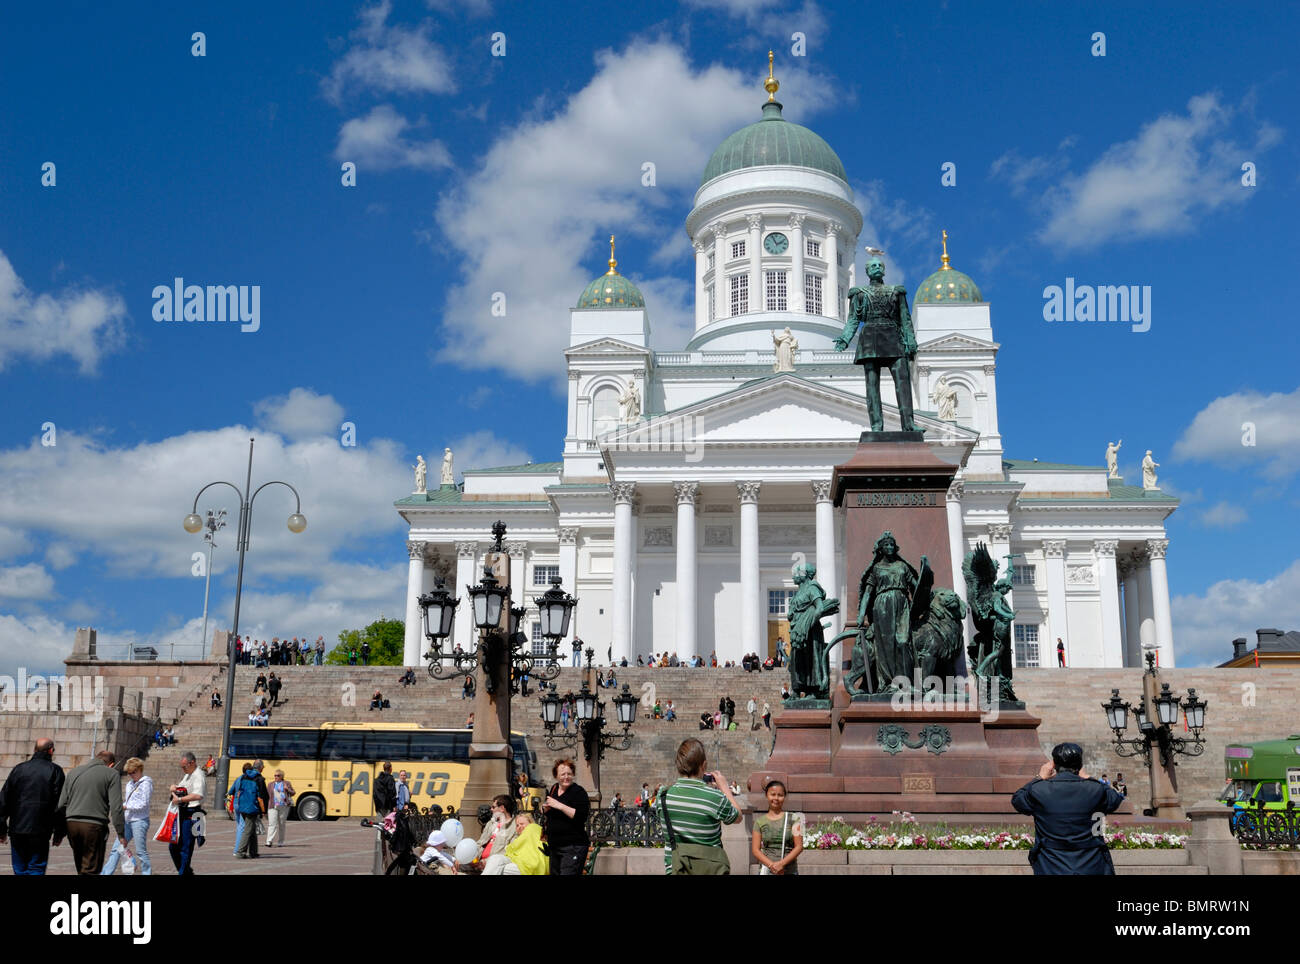 Touristen sind auf dem Senatsplatz in Helsinki Sehenswürdigkeiten fotografieren. Senaatintori, Senatsplatz, Helsinki... Stockfoto